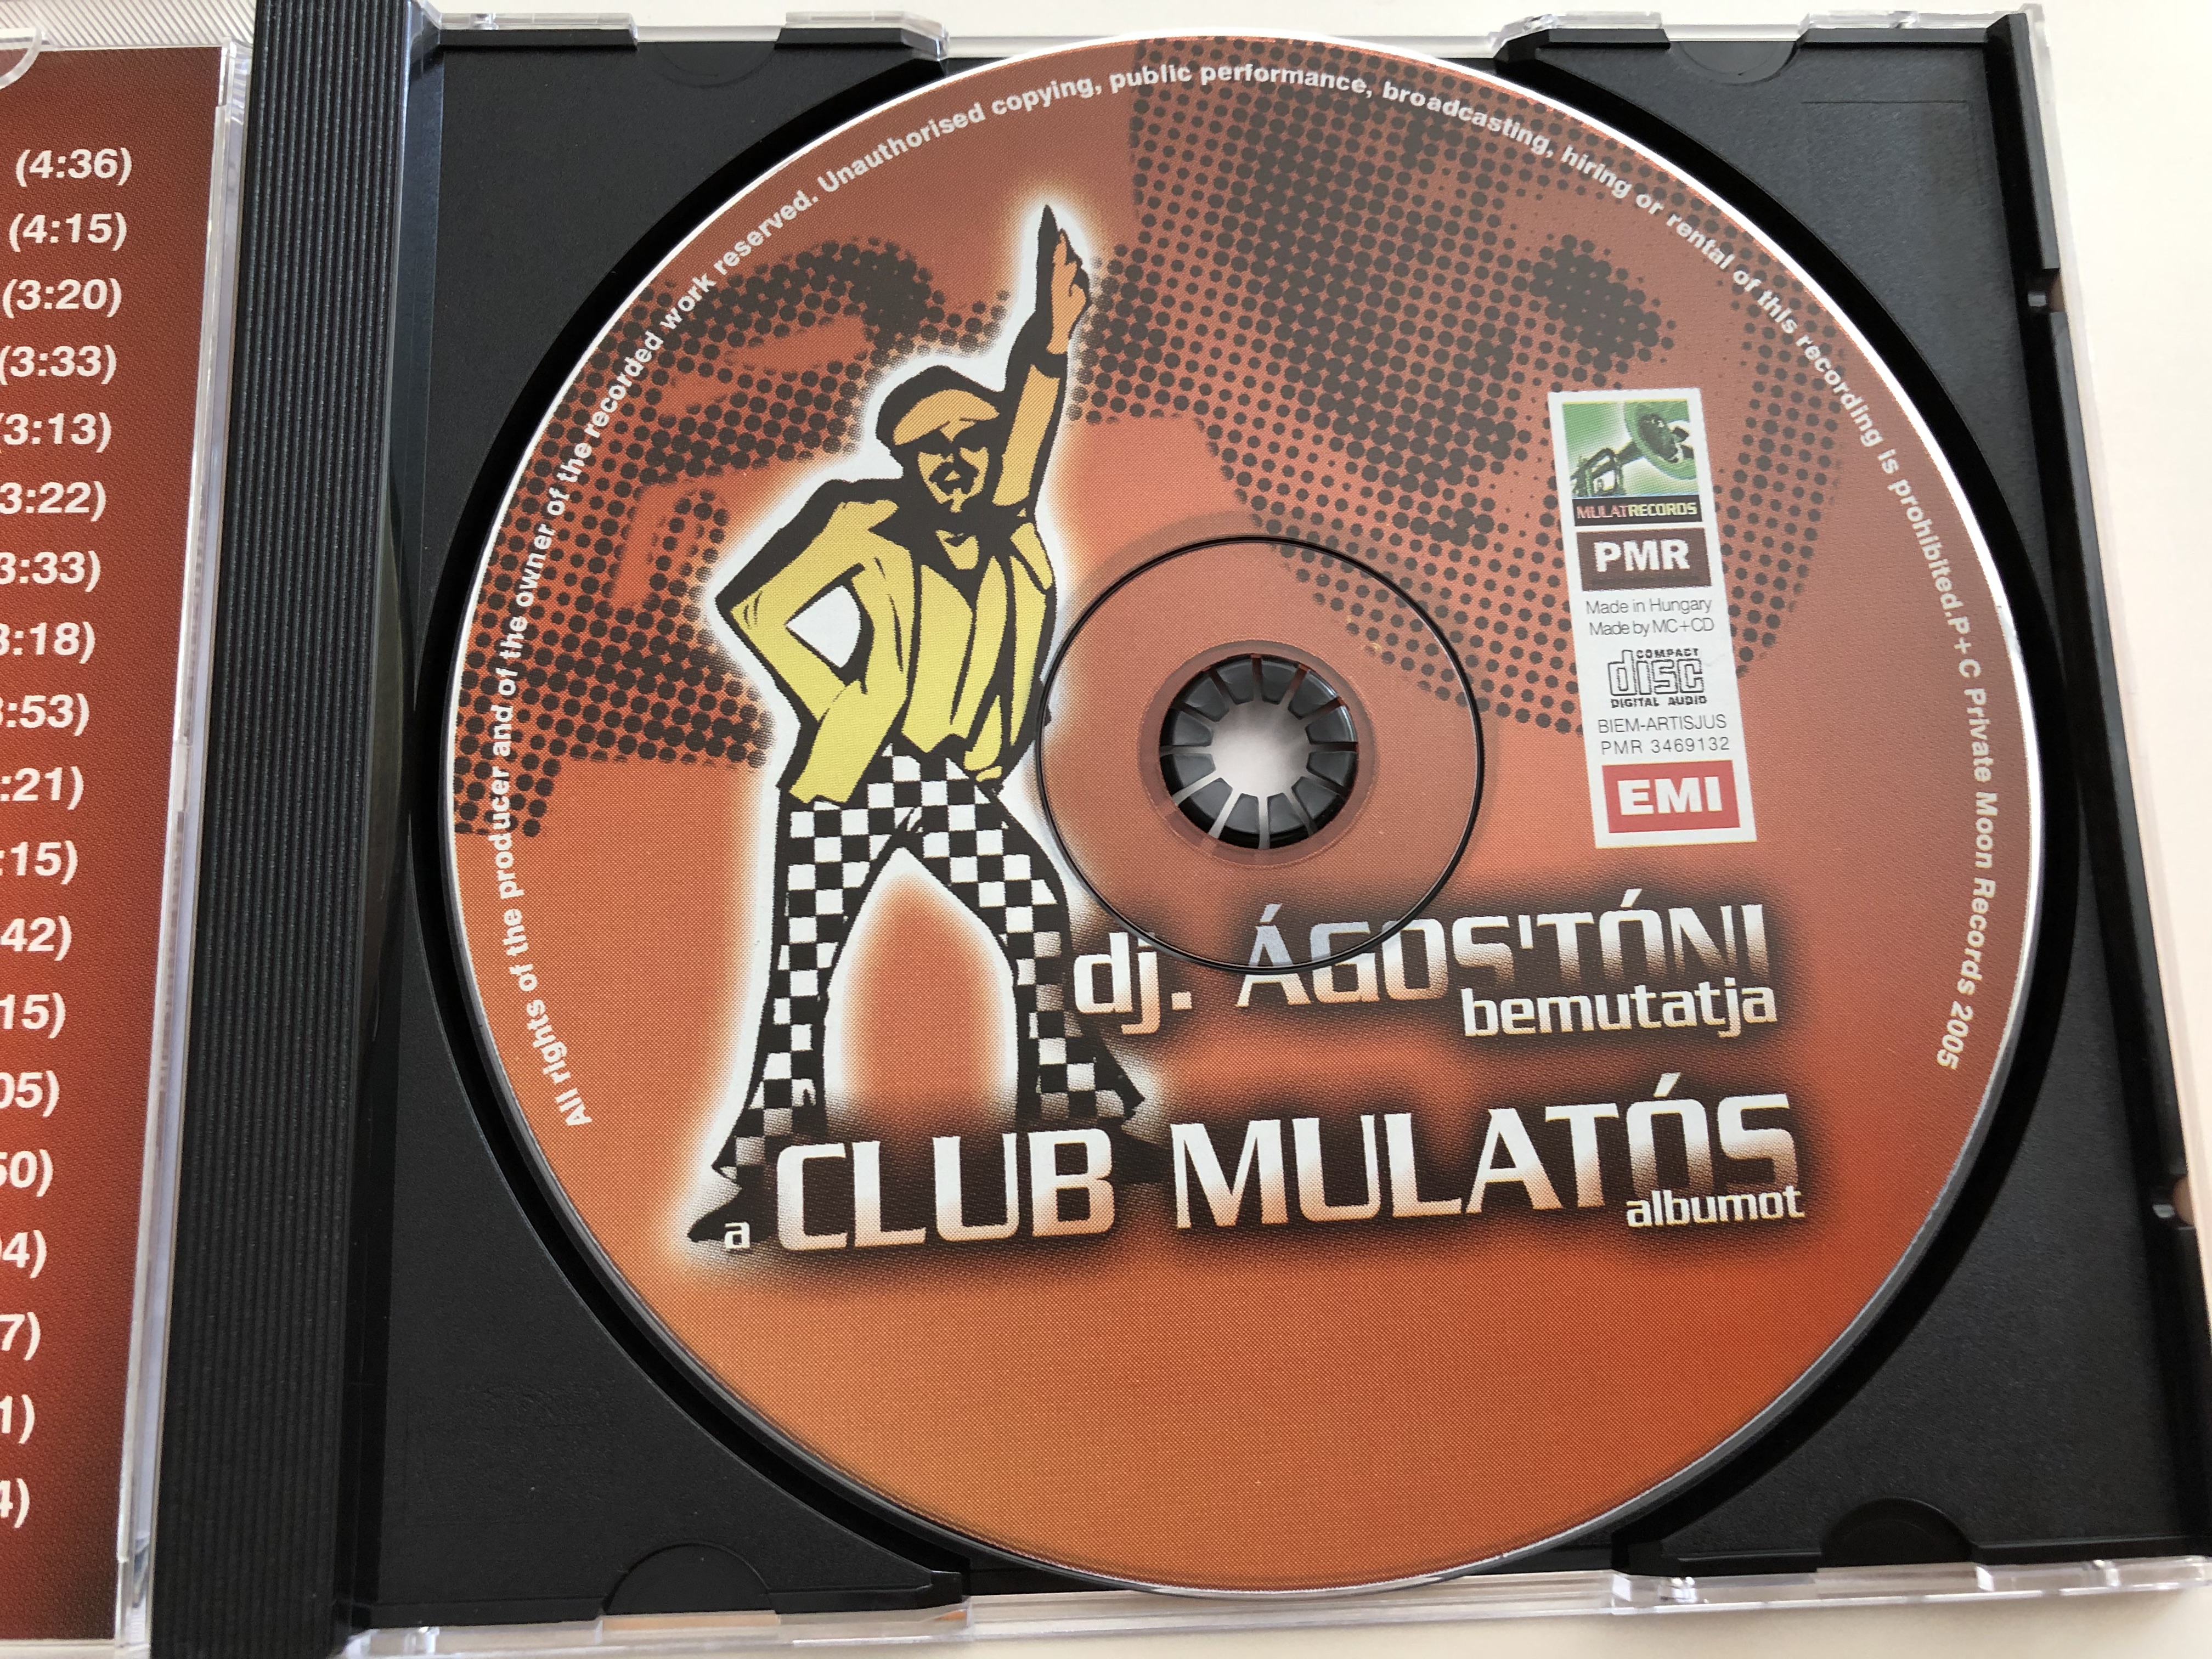 dj.-gos-t-ni-bemutatja-a-club-mulat-s-albumot-audio-cd-2005-emi-pmr-3469132-4-.jpg